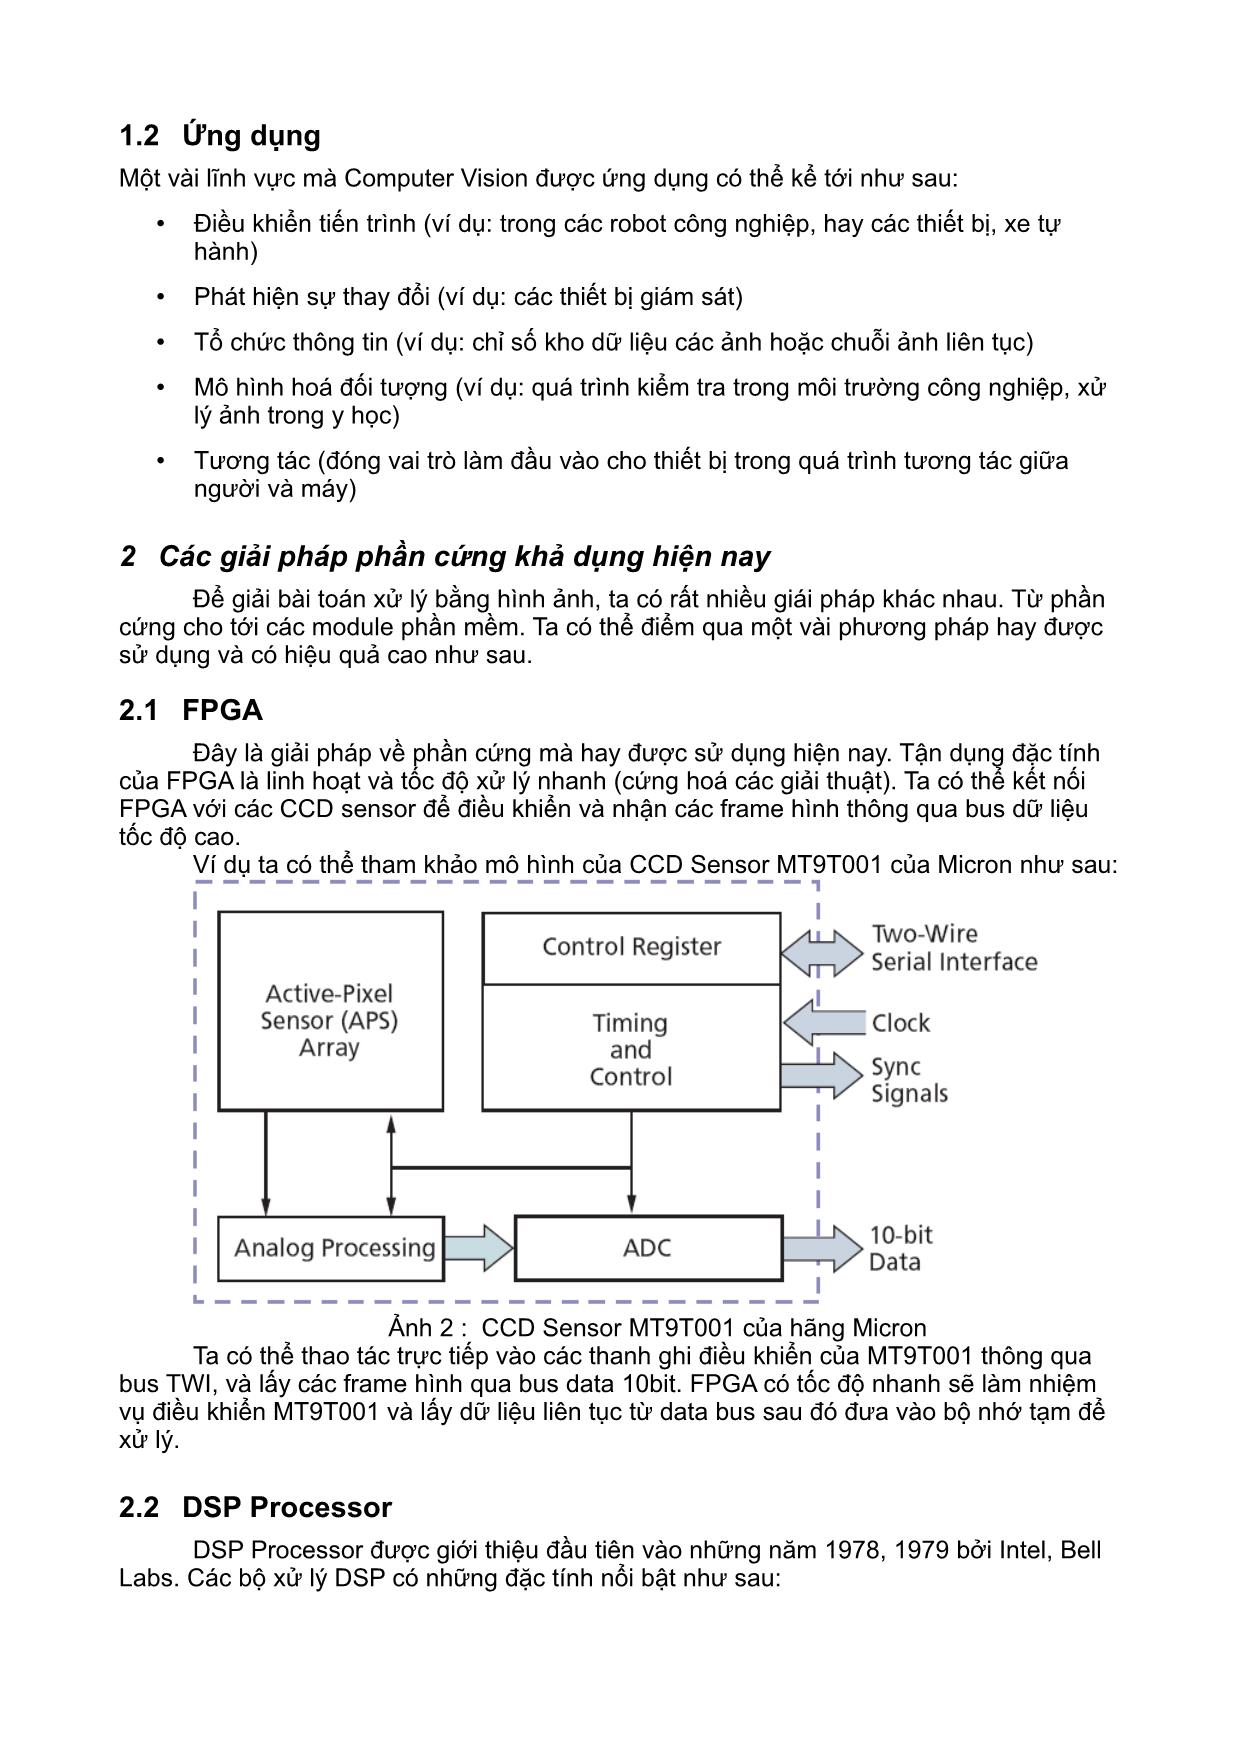 Giới thiệu giải pháp phần cứng cho bài toán thị giác máy trên nền linux nhúng trang 2